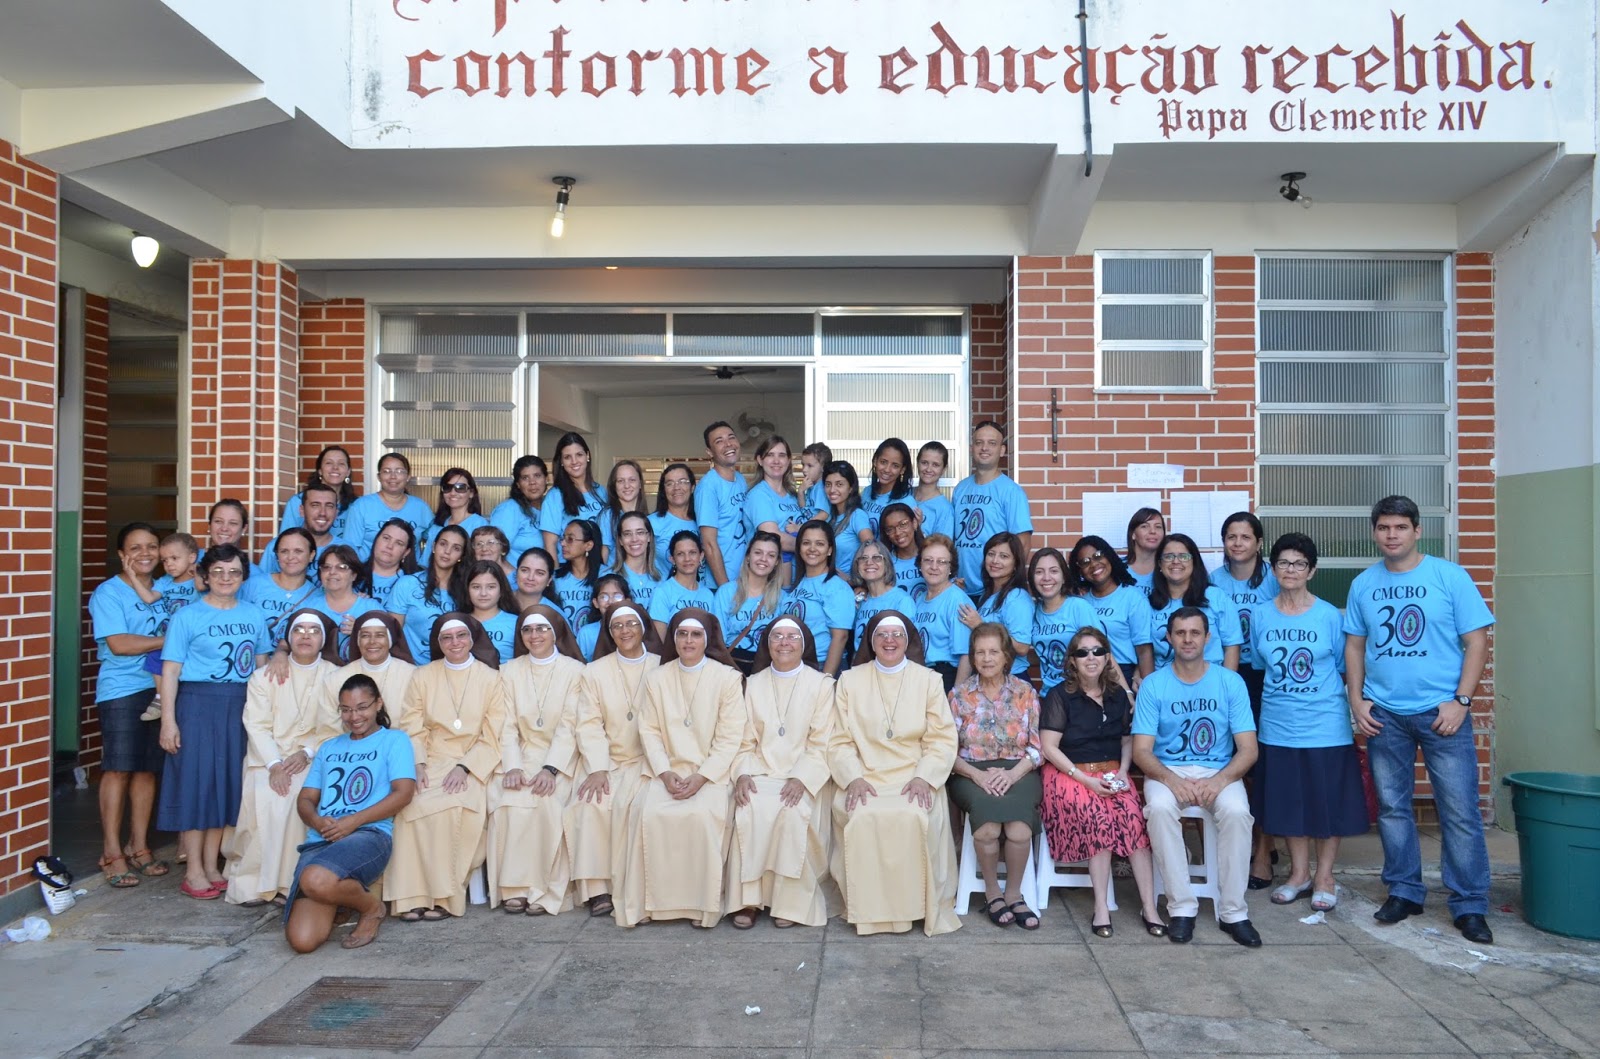 O NORTE FLUMINENSE, Bom Jesus do Itabapoana (RJ): 30 anos do CMCBO